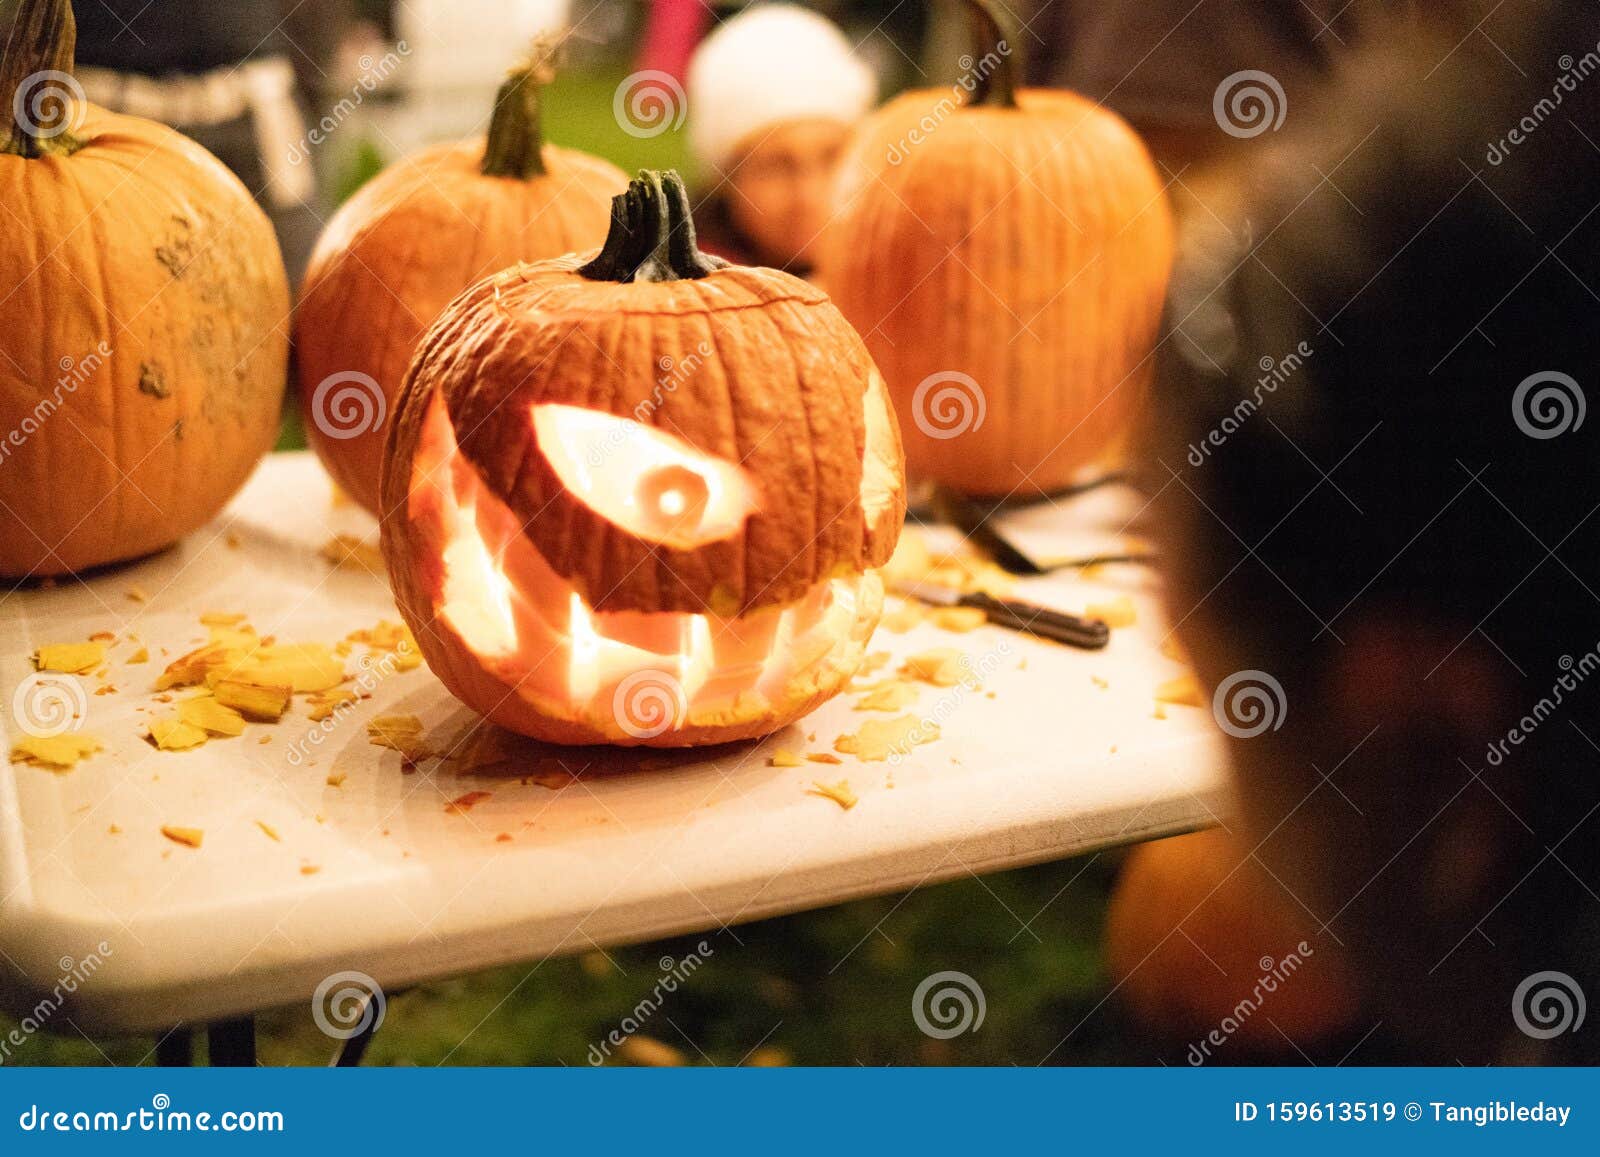 halloween pumpkin carving, eyes teeth creepy smile